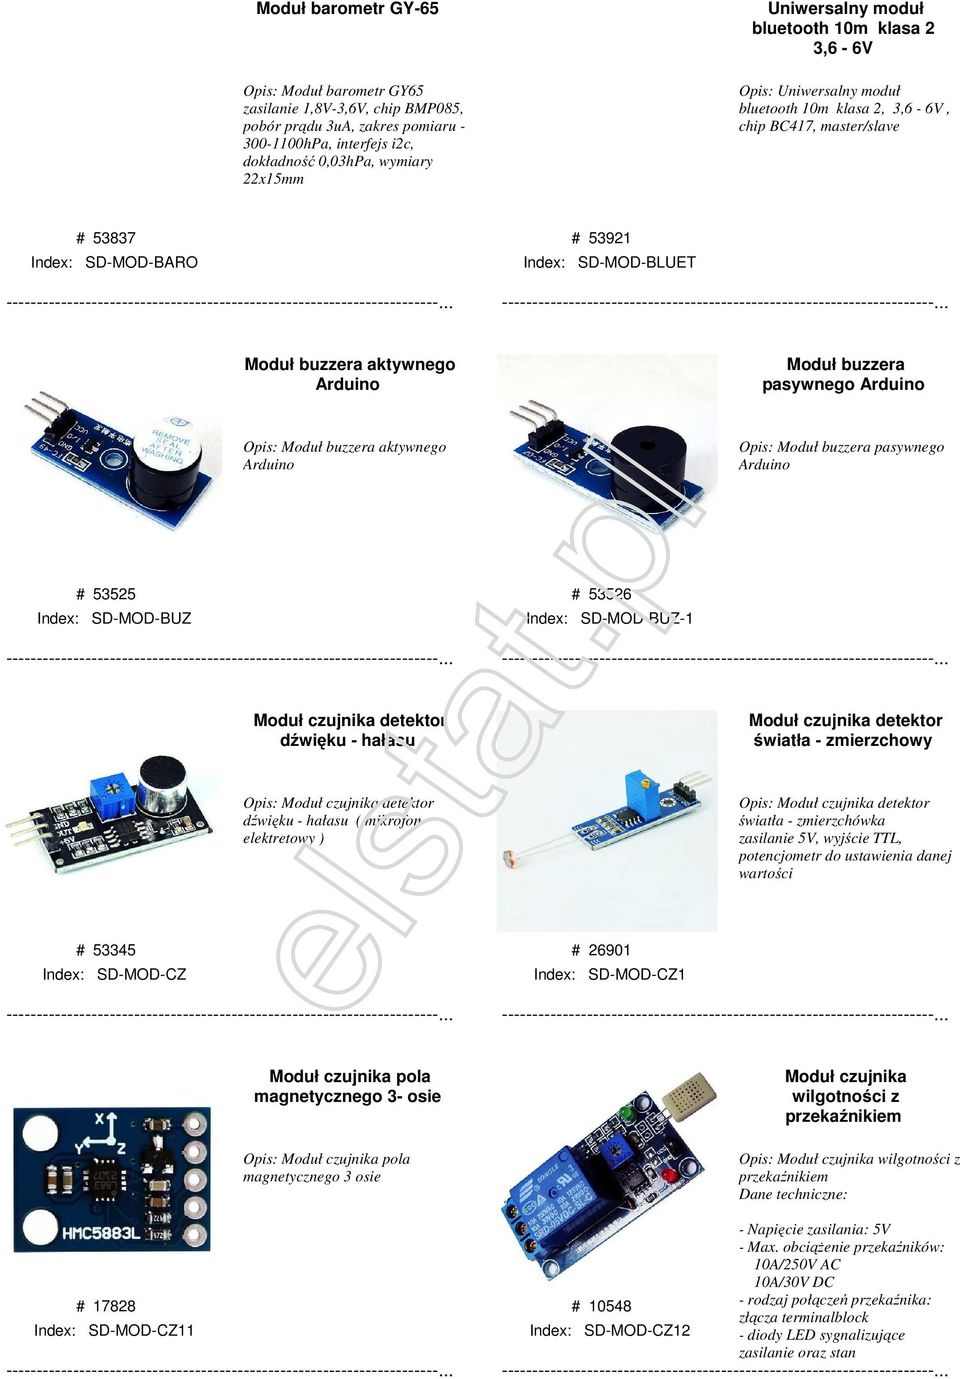 Moduł buzzera pasywnego Arduino Opis: Moduł buzzera aktywnego Arduino Opis: Moduł buzzera pasywnego Arduino # 53525 Index: SD-MOD-BUZ # 53526 Index: SD-MOD-BUZ-1 Moduł czujnika detektor dźwięku -